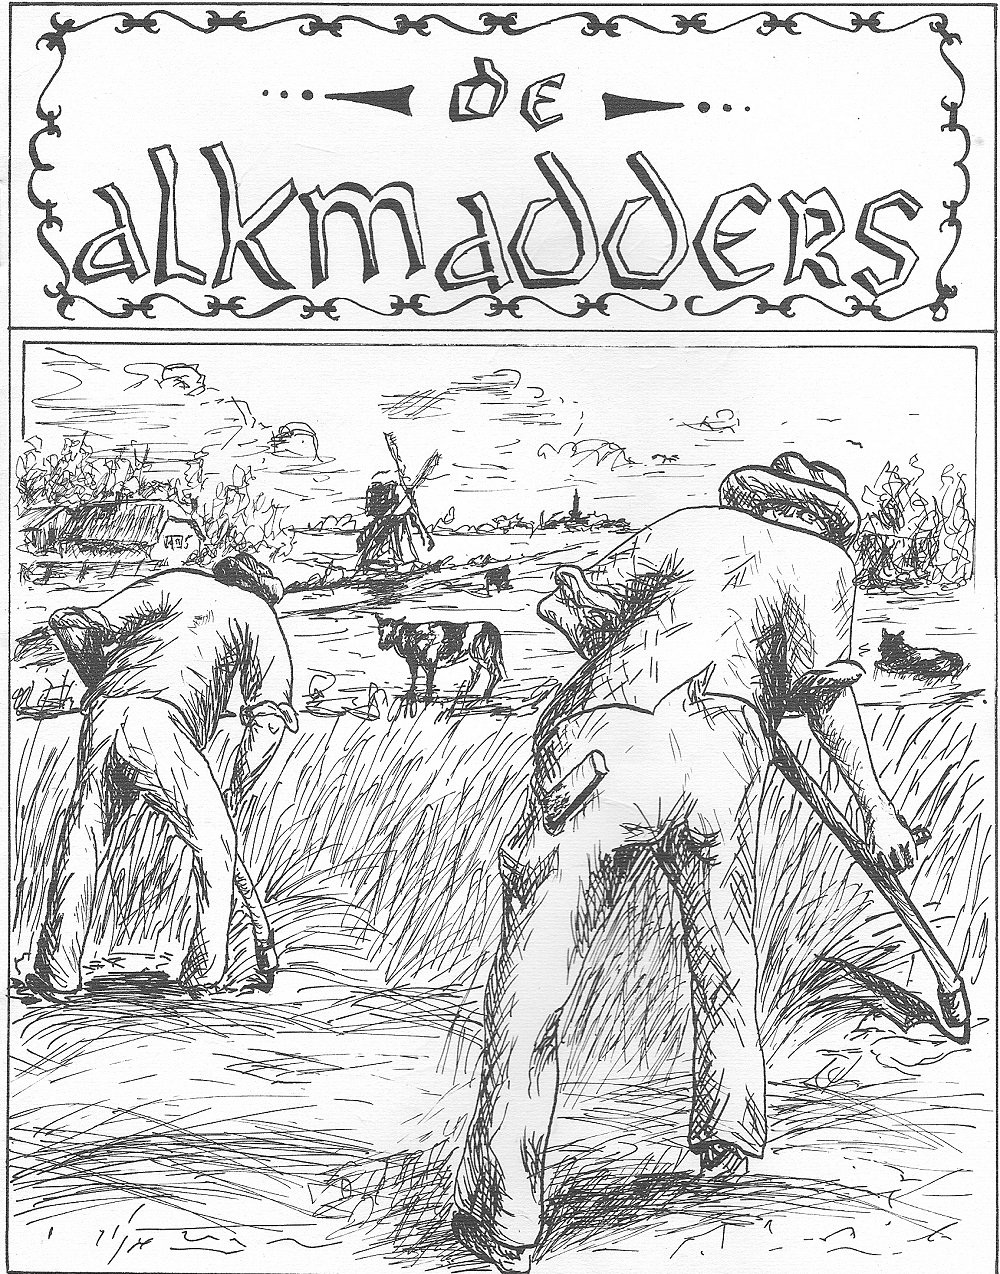 Cover van de eerste Alkmadders